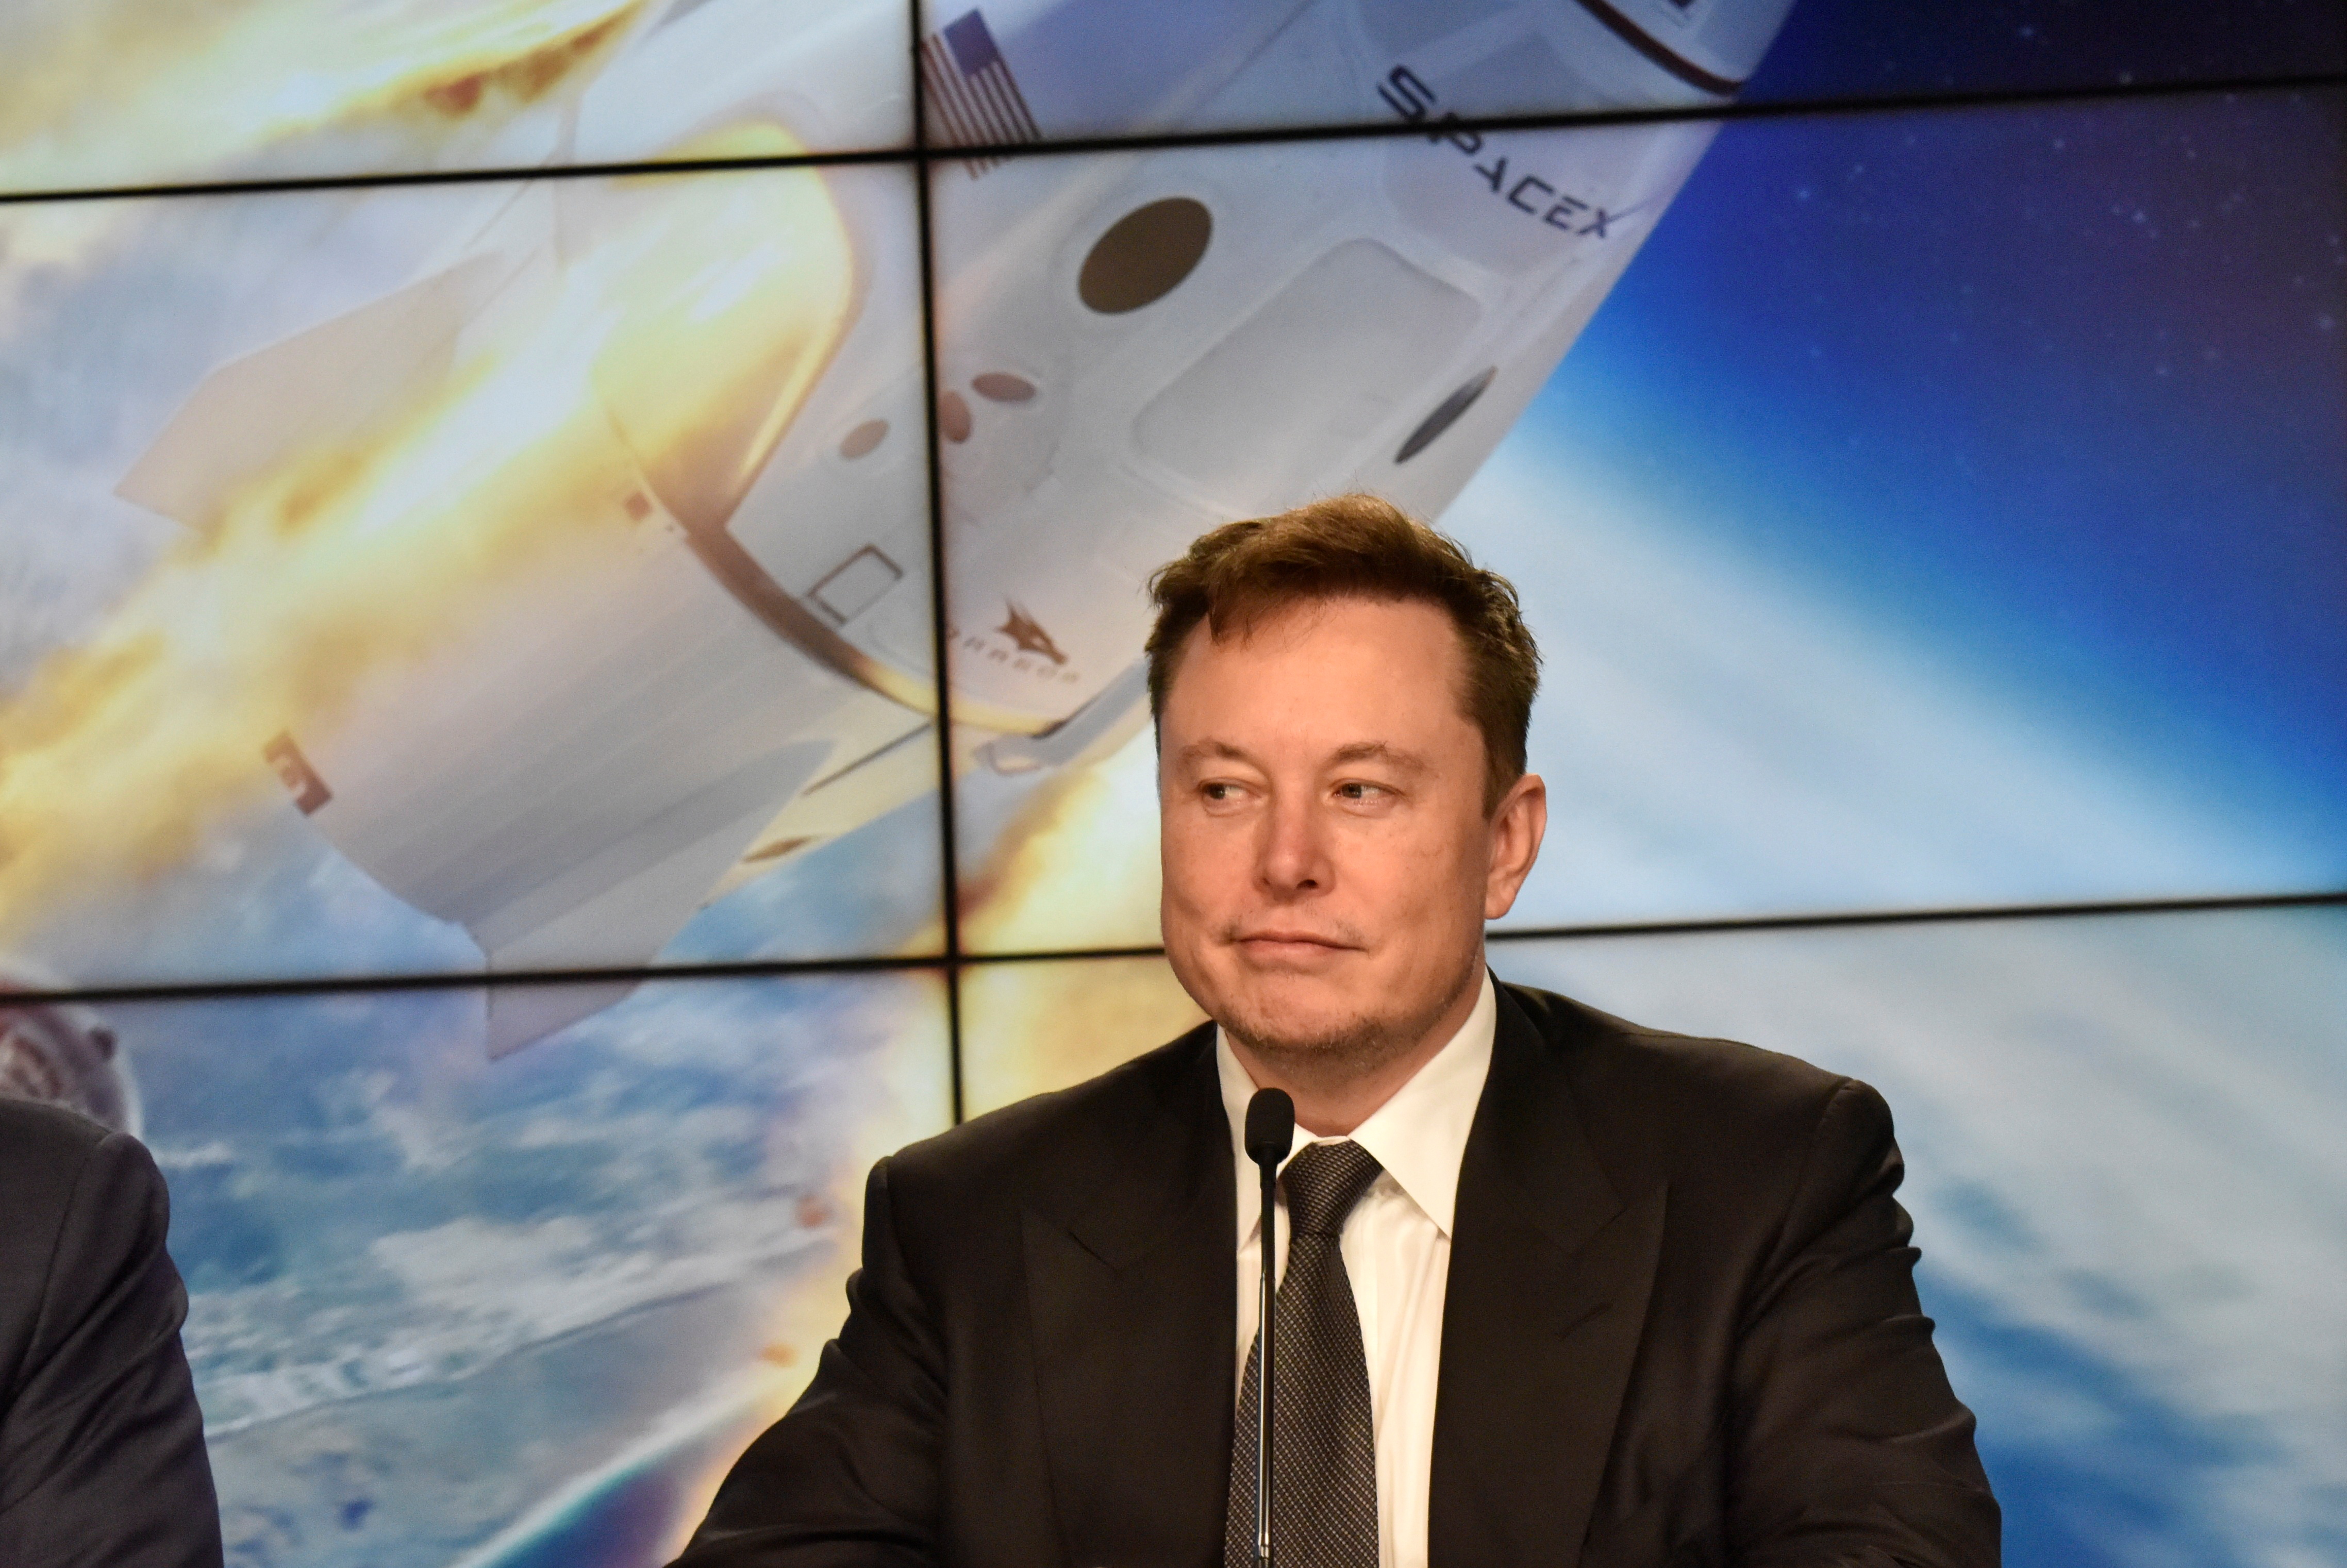 El fundador e ingeniero jefe de SpaceX, Elon Musk, asiste a una conferencia de prensa posterior al lanzamiento para discutir la prueba de aborto en vuelo de la cápsula de astronautas de SpaceX Crew Dragon en el Centro Espacial Kennedy en Cabo Cañaveral, Florida, EE.UU. Enero 19, 2020. REUTERS/Steve Nesius/File Photo